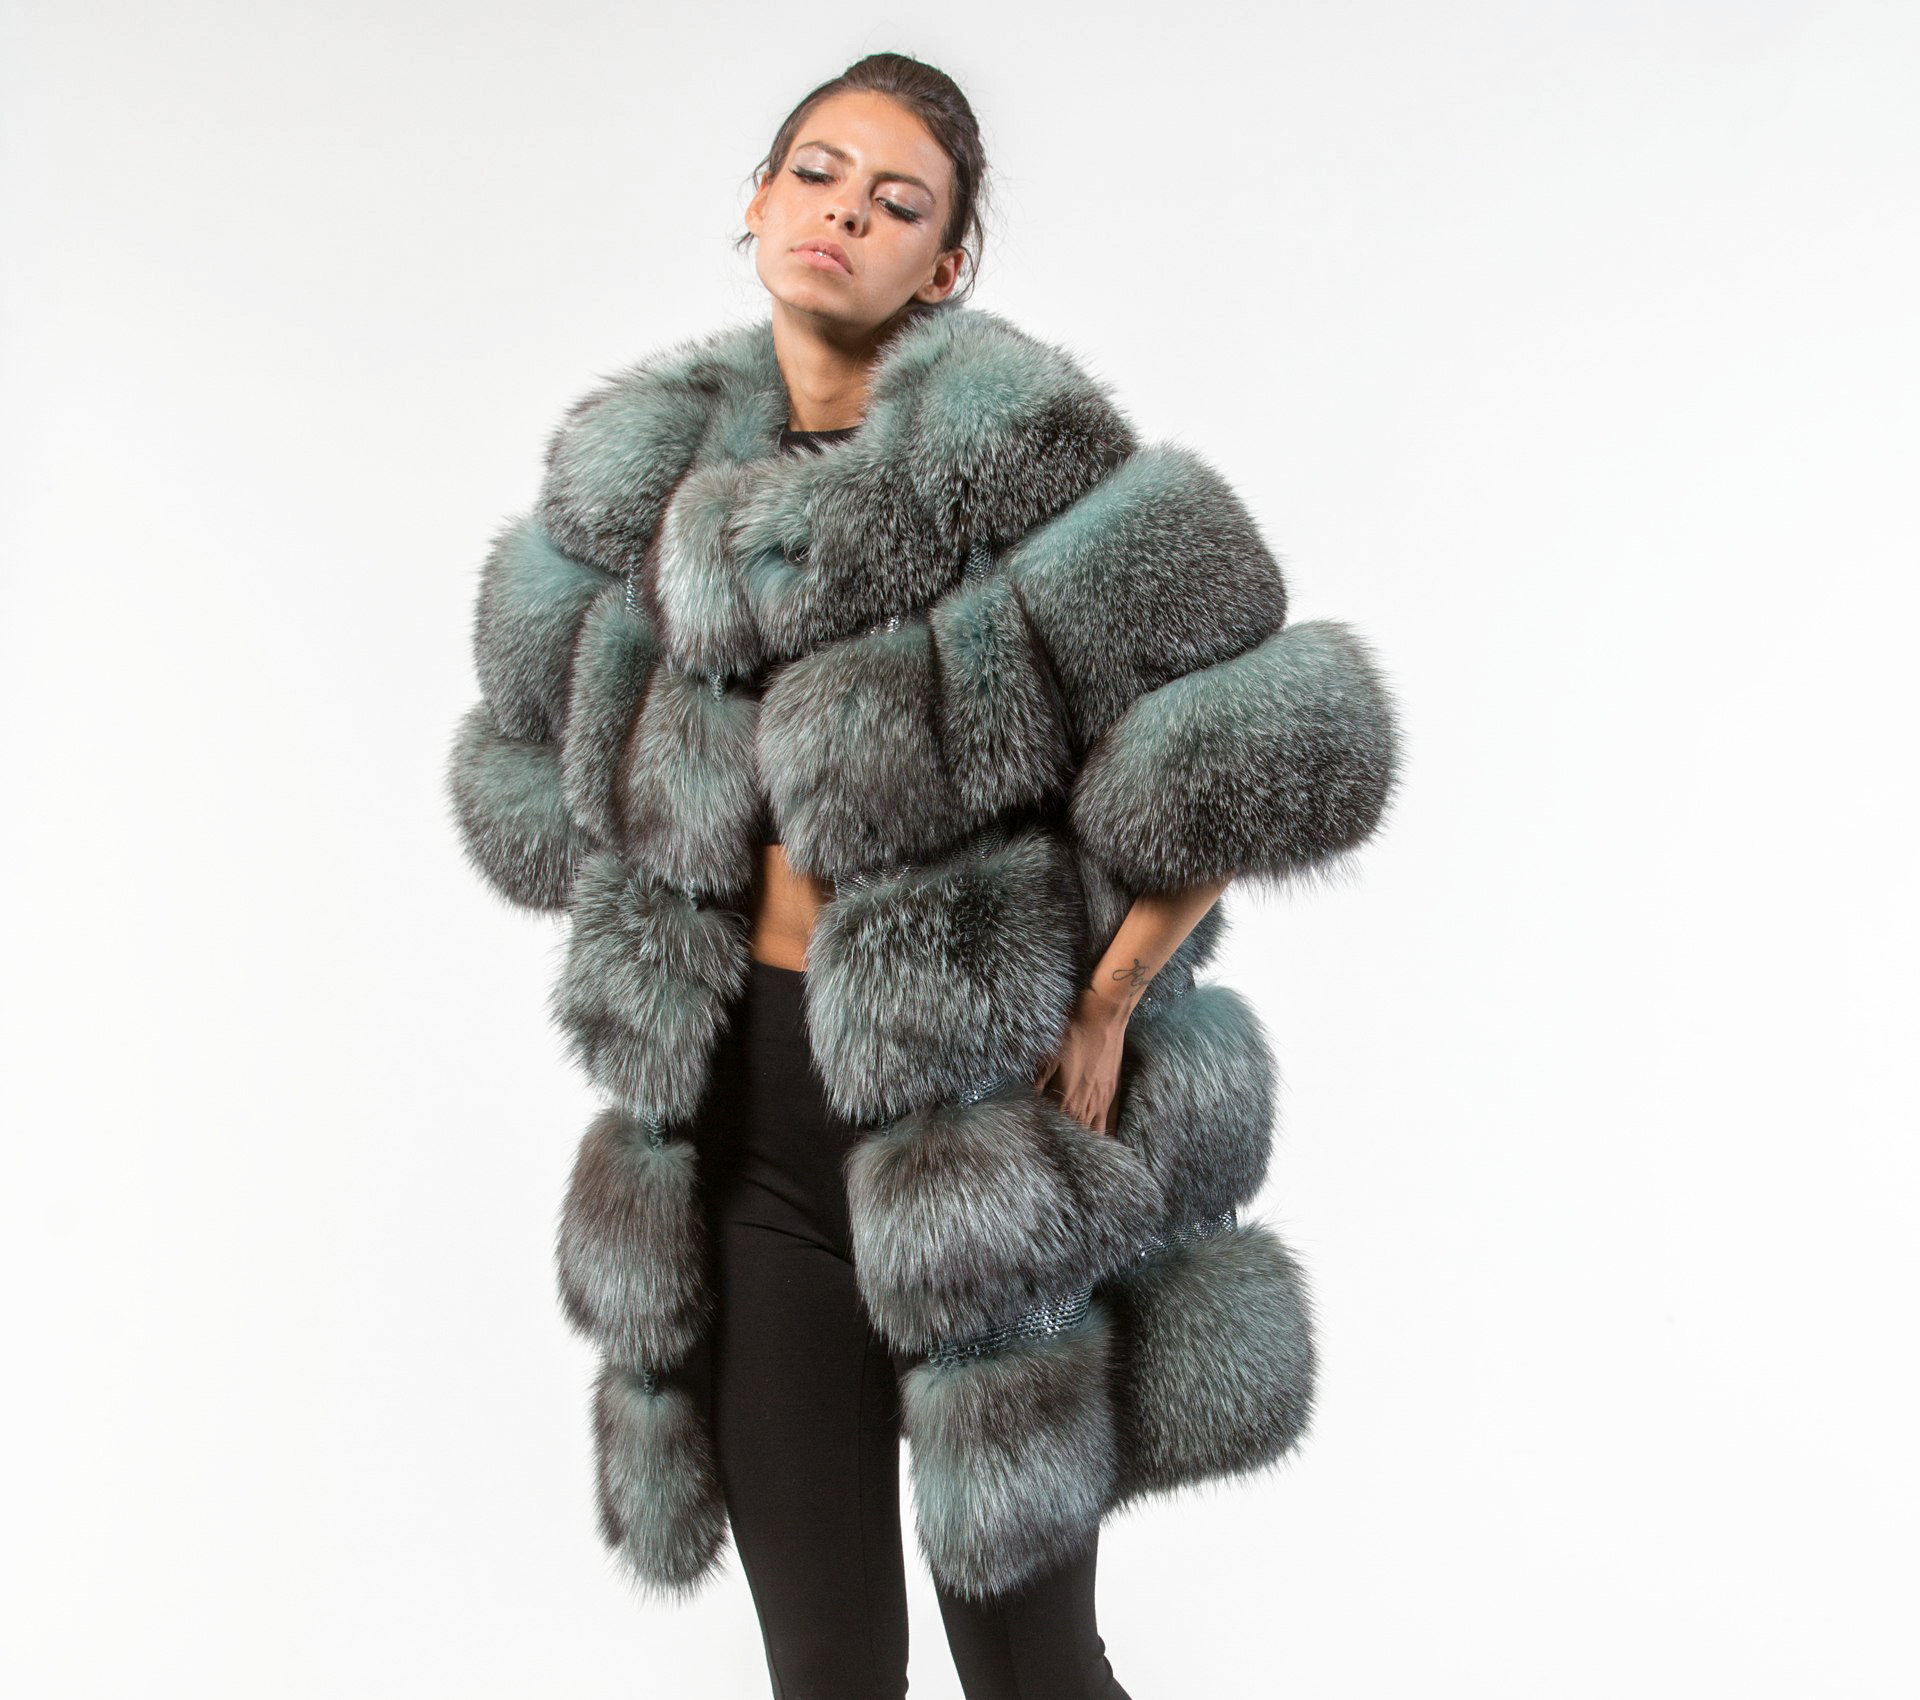 Fur Jacket Download Transparent PNG Image